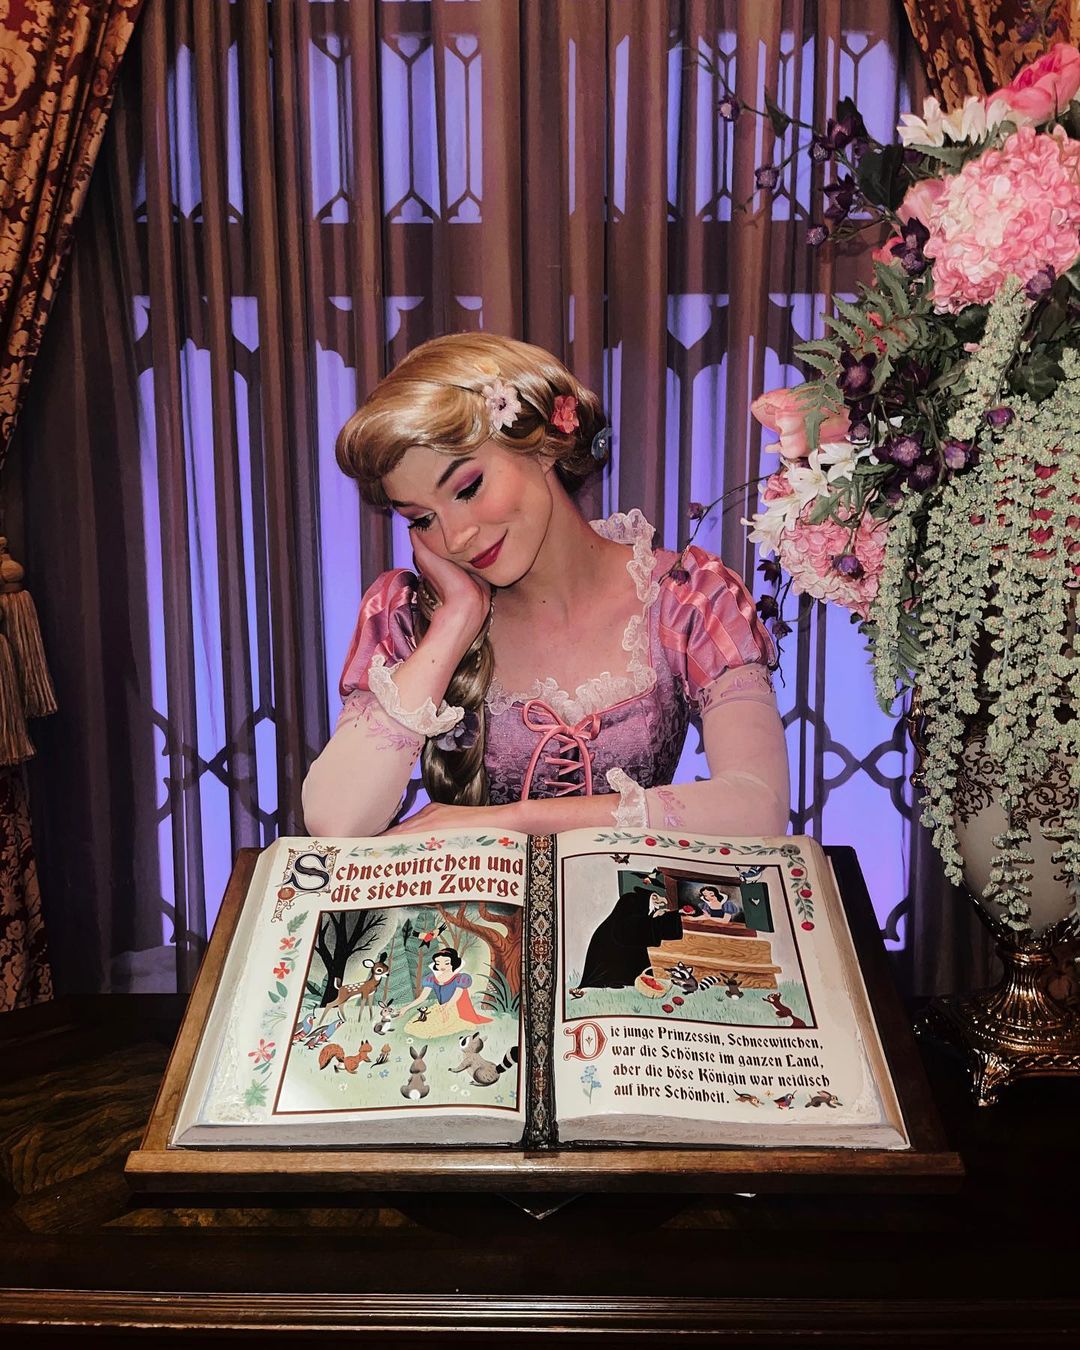 Princess Fairy Tale Hall - Treffen Sie die Prinzessinnen im magischen Königreich